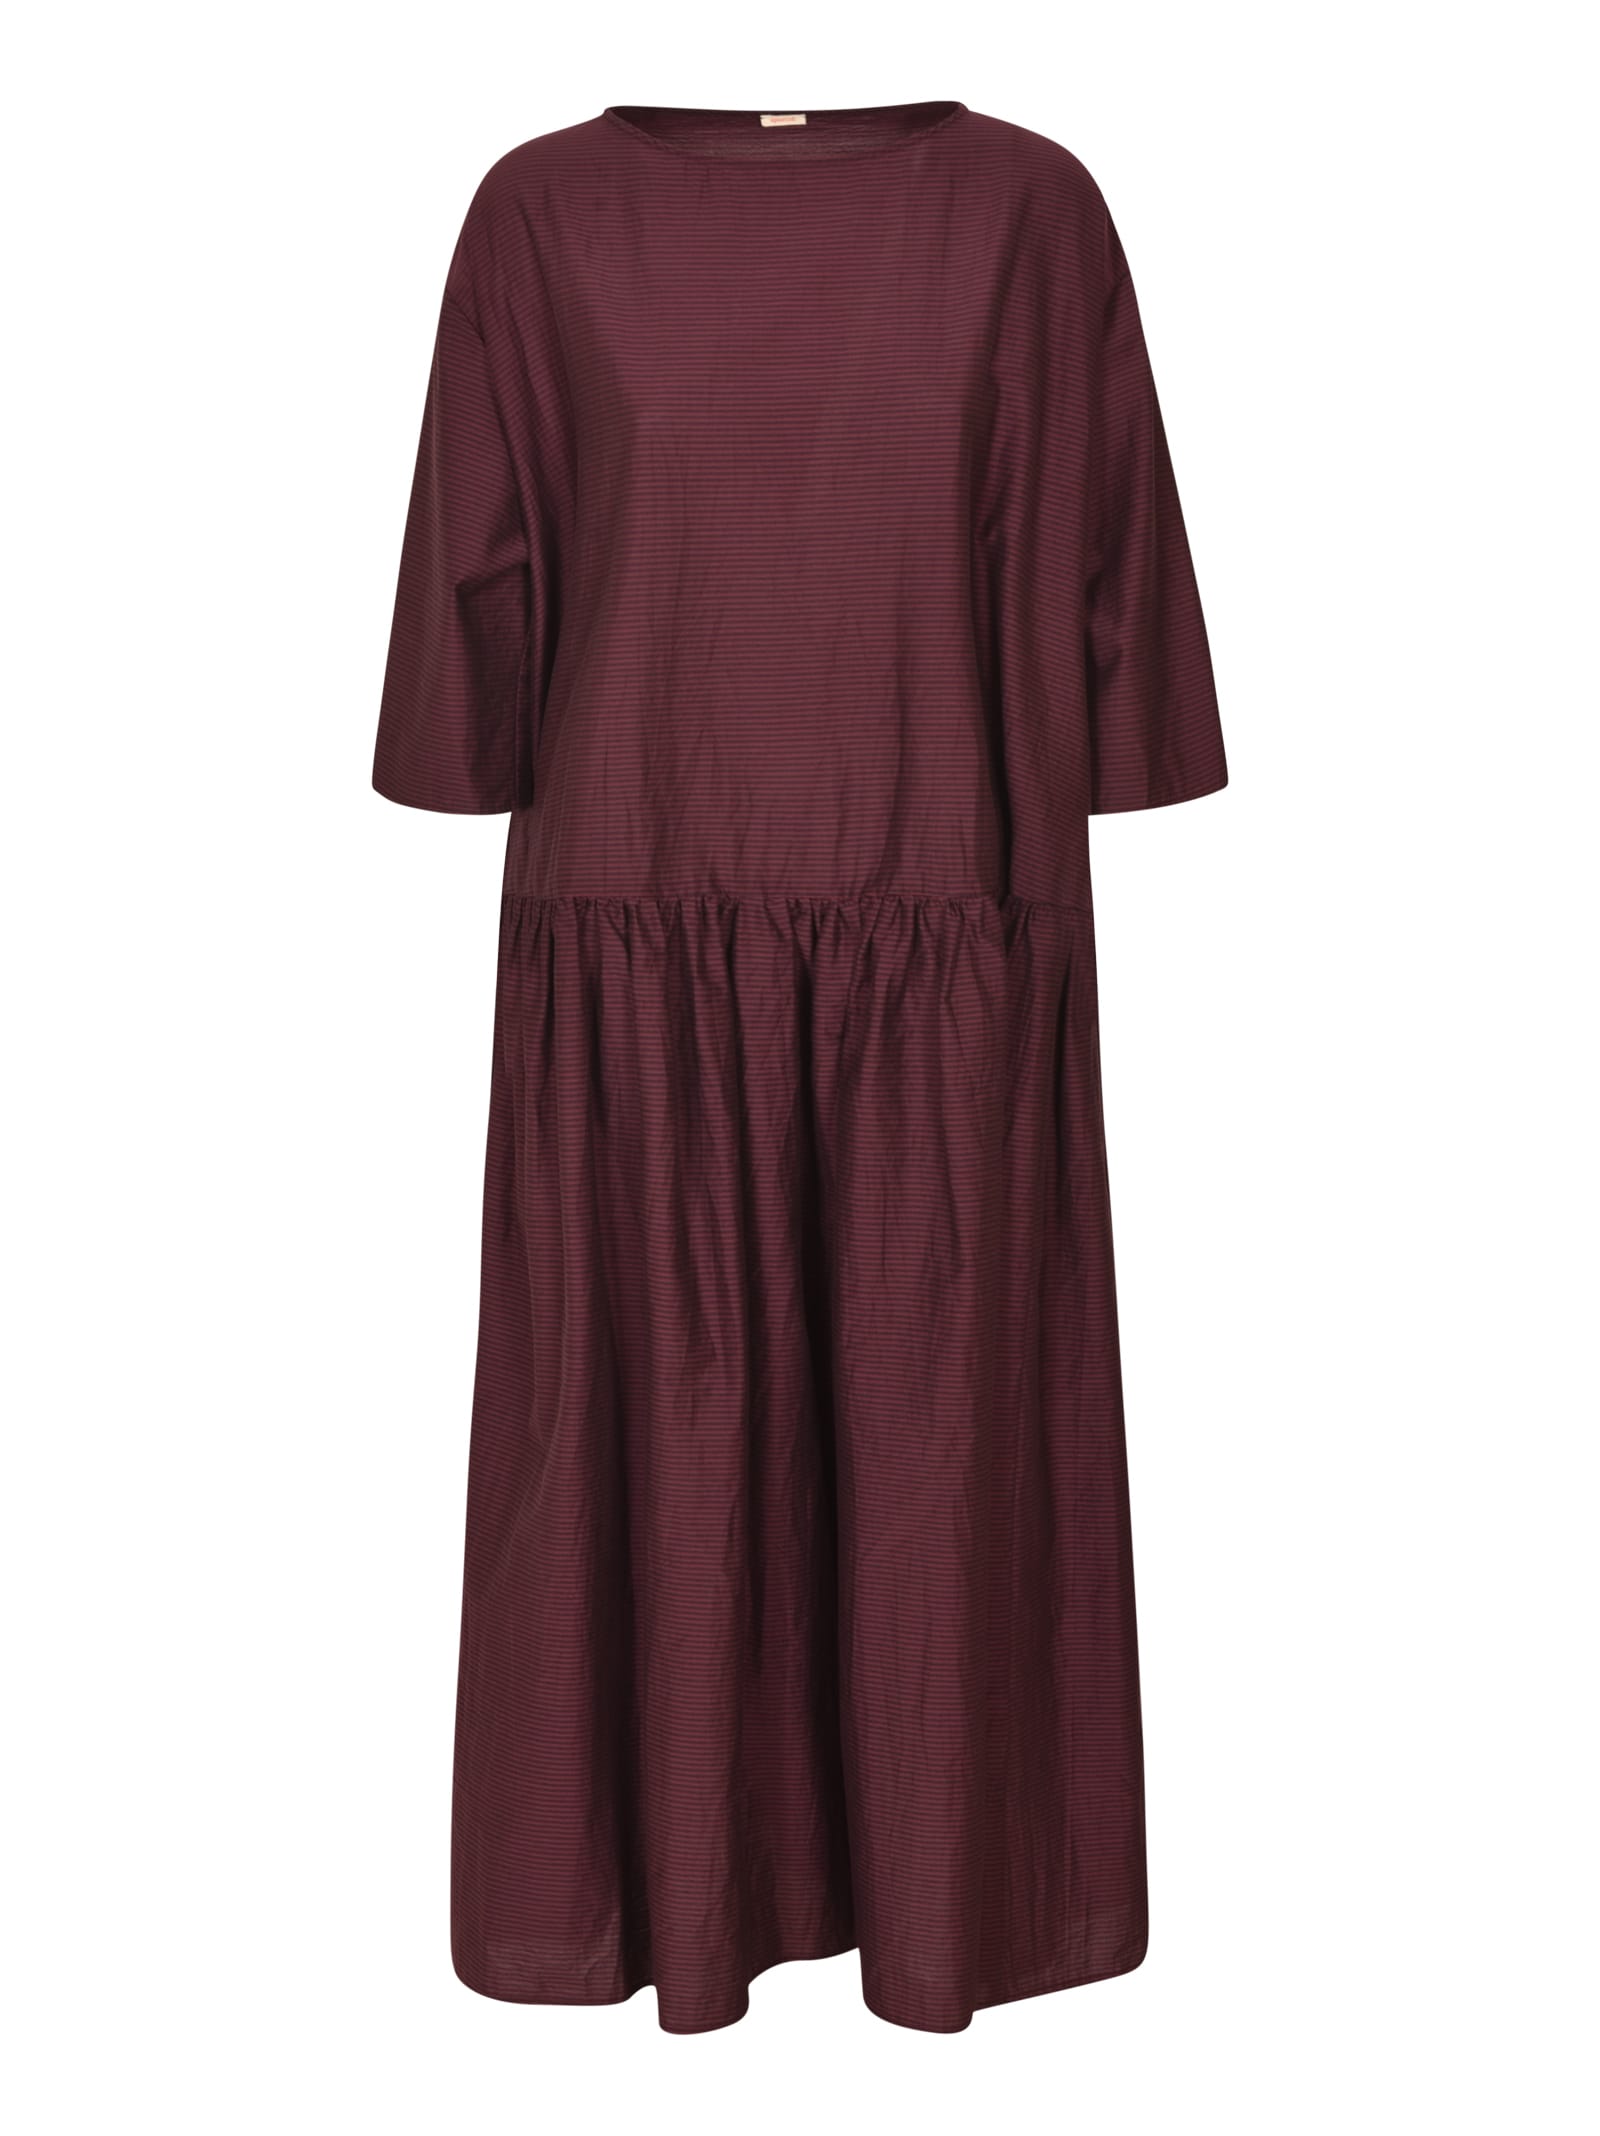 A Punto B Quarter-length Plain Dress